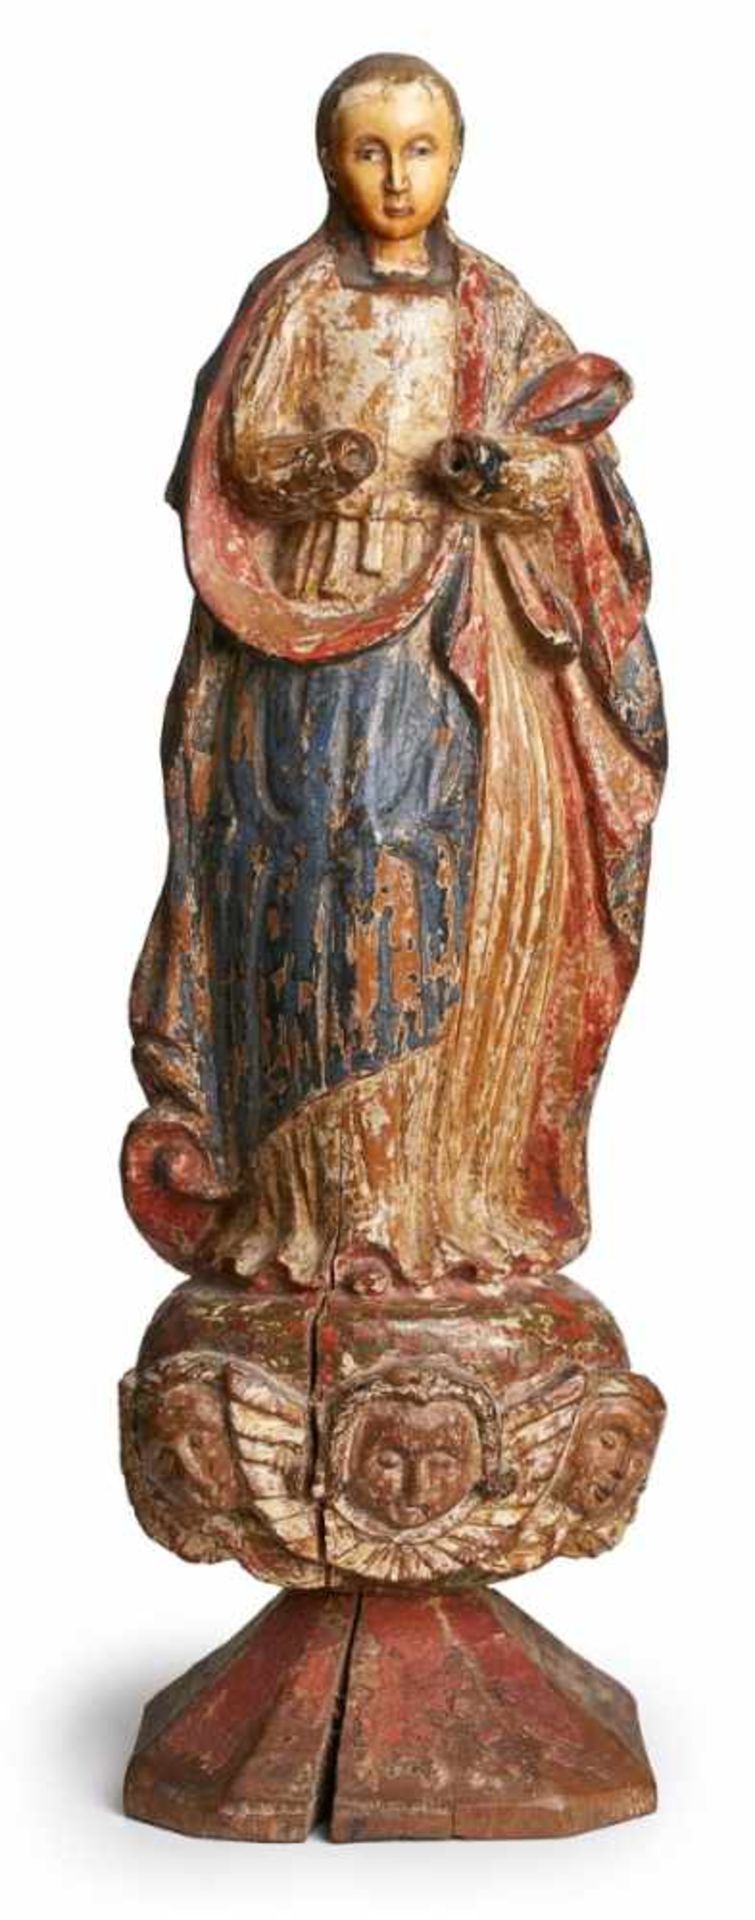 Madonna, wohl Spanien 18. Jh. Holz vollrd. geschnitzt, Rückseite abgeflacht, bunt gefasst, Reste